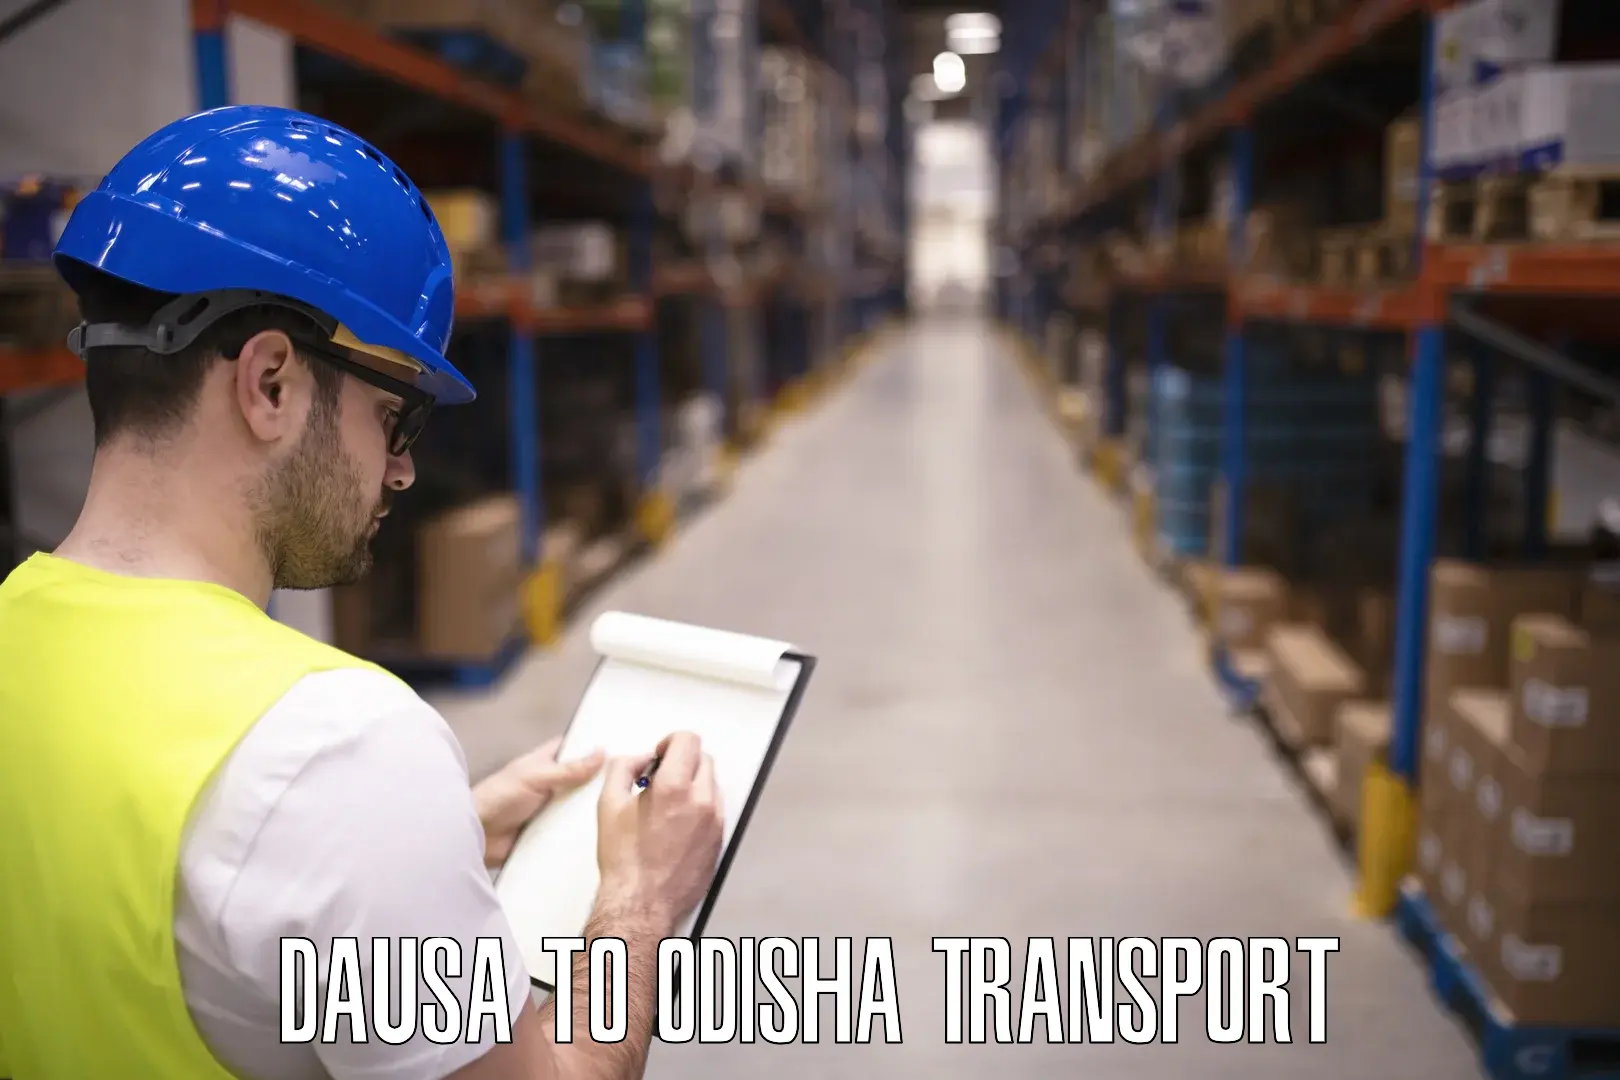 Transport services Dausa to Jaipatna